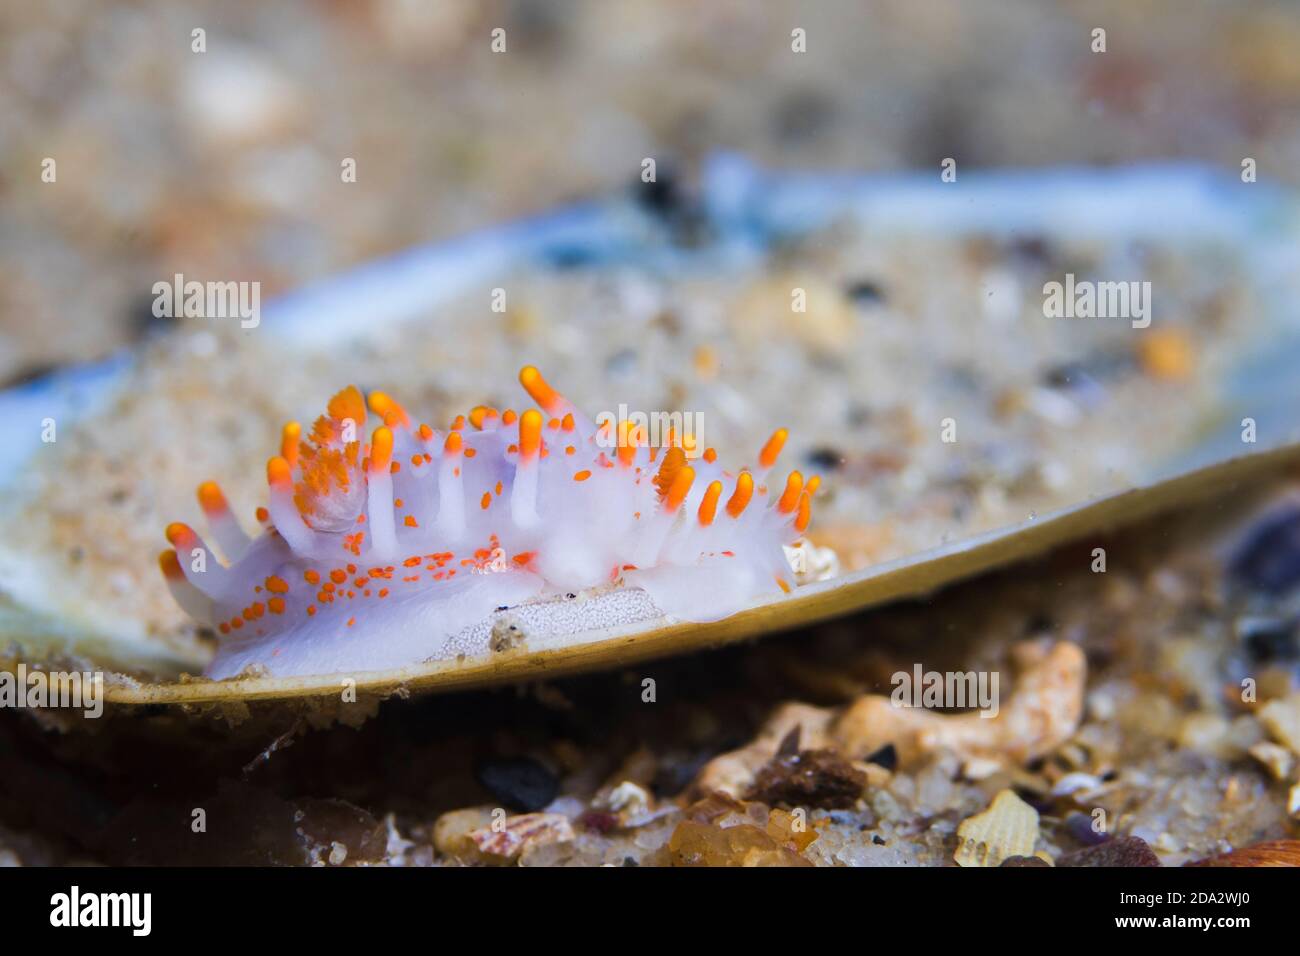 Slug de mar de color naranja-clubbed (Limacia clariguera) con su cinta de huevo, dorid de cuerpo blanco con numerosas proyecciones de punta naranja en su cuerpo. Foto de stock